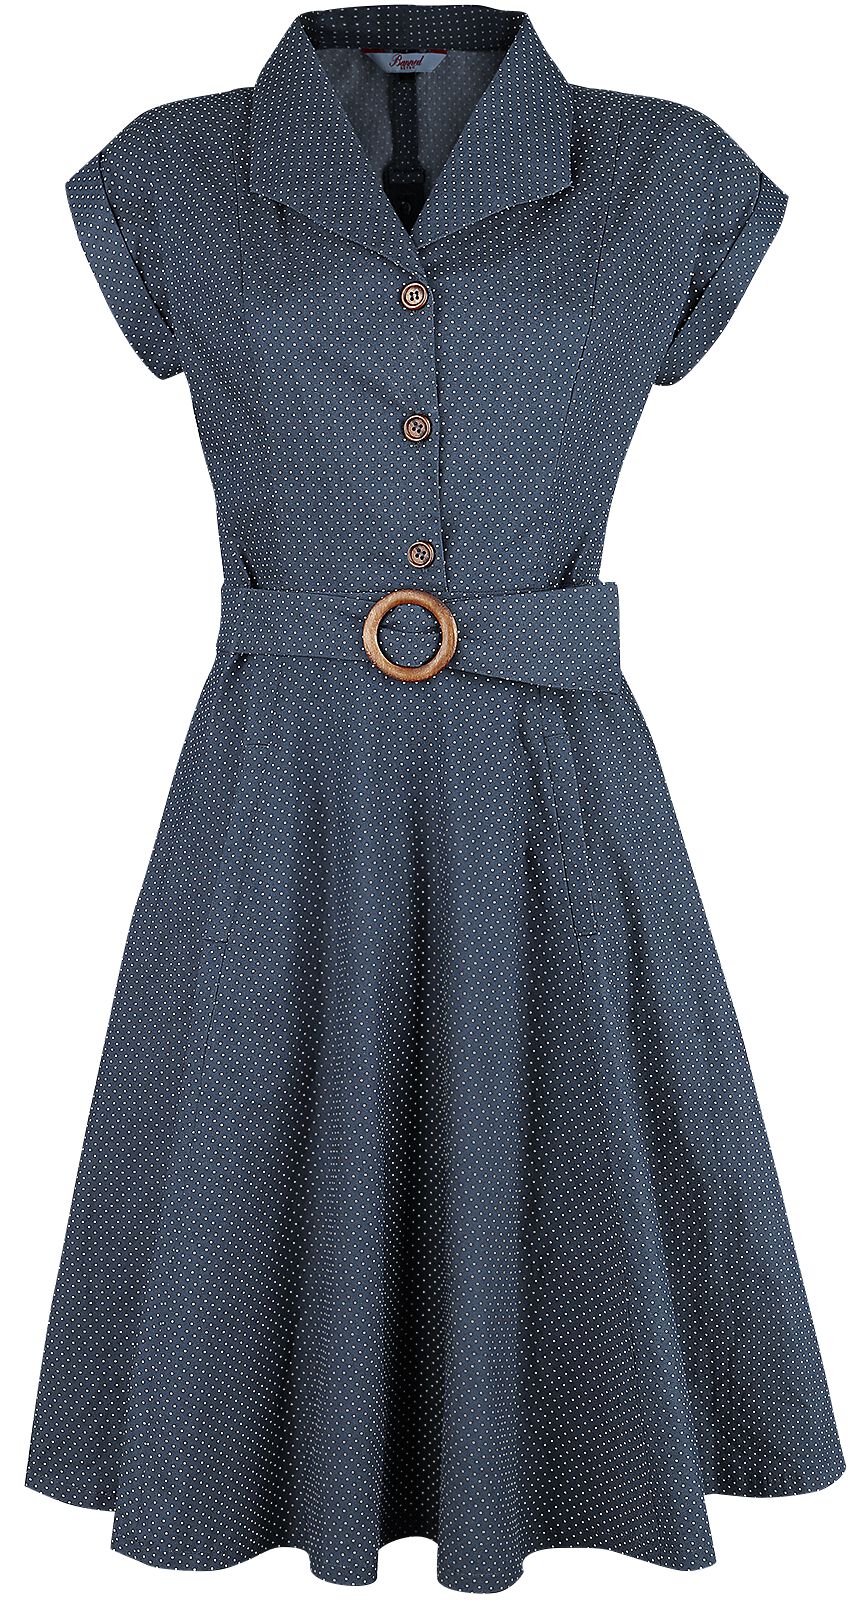 Banned Retro - Rockabilly Kleid knielang - Spot Perfection Fit & Flare Dress - XS bis 4XL - für Damen - Größe M - navy